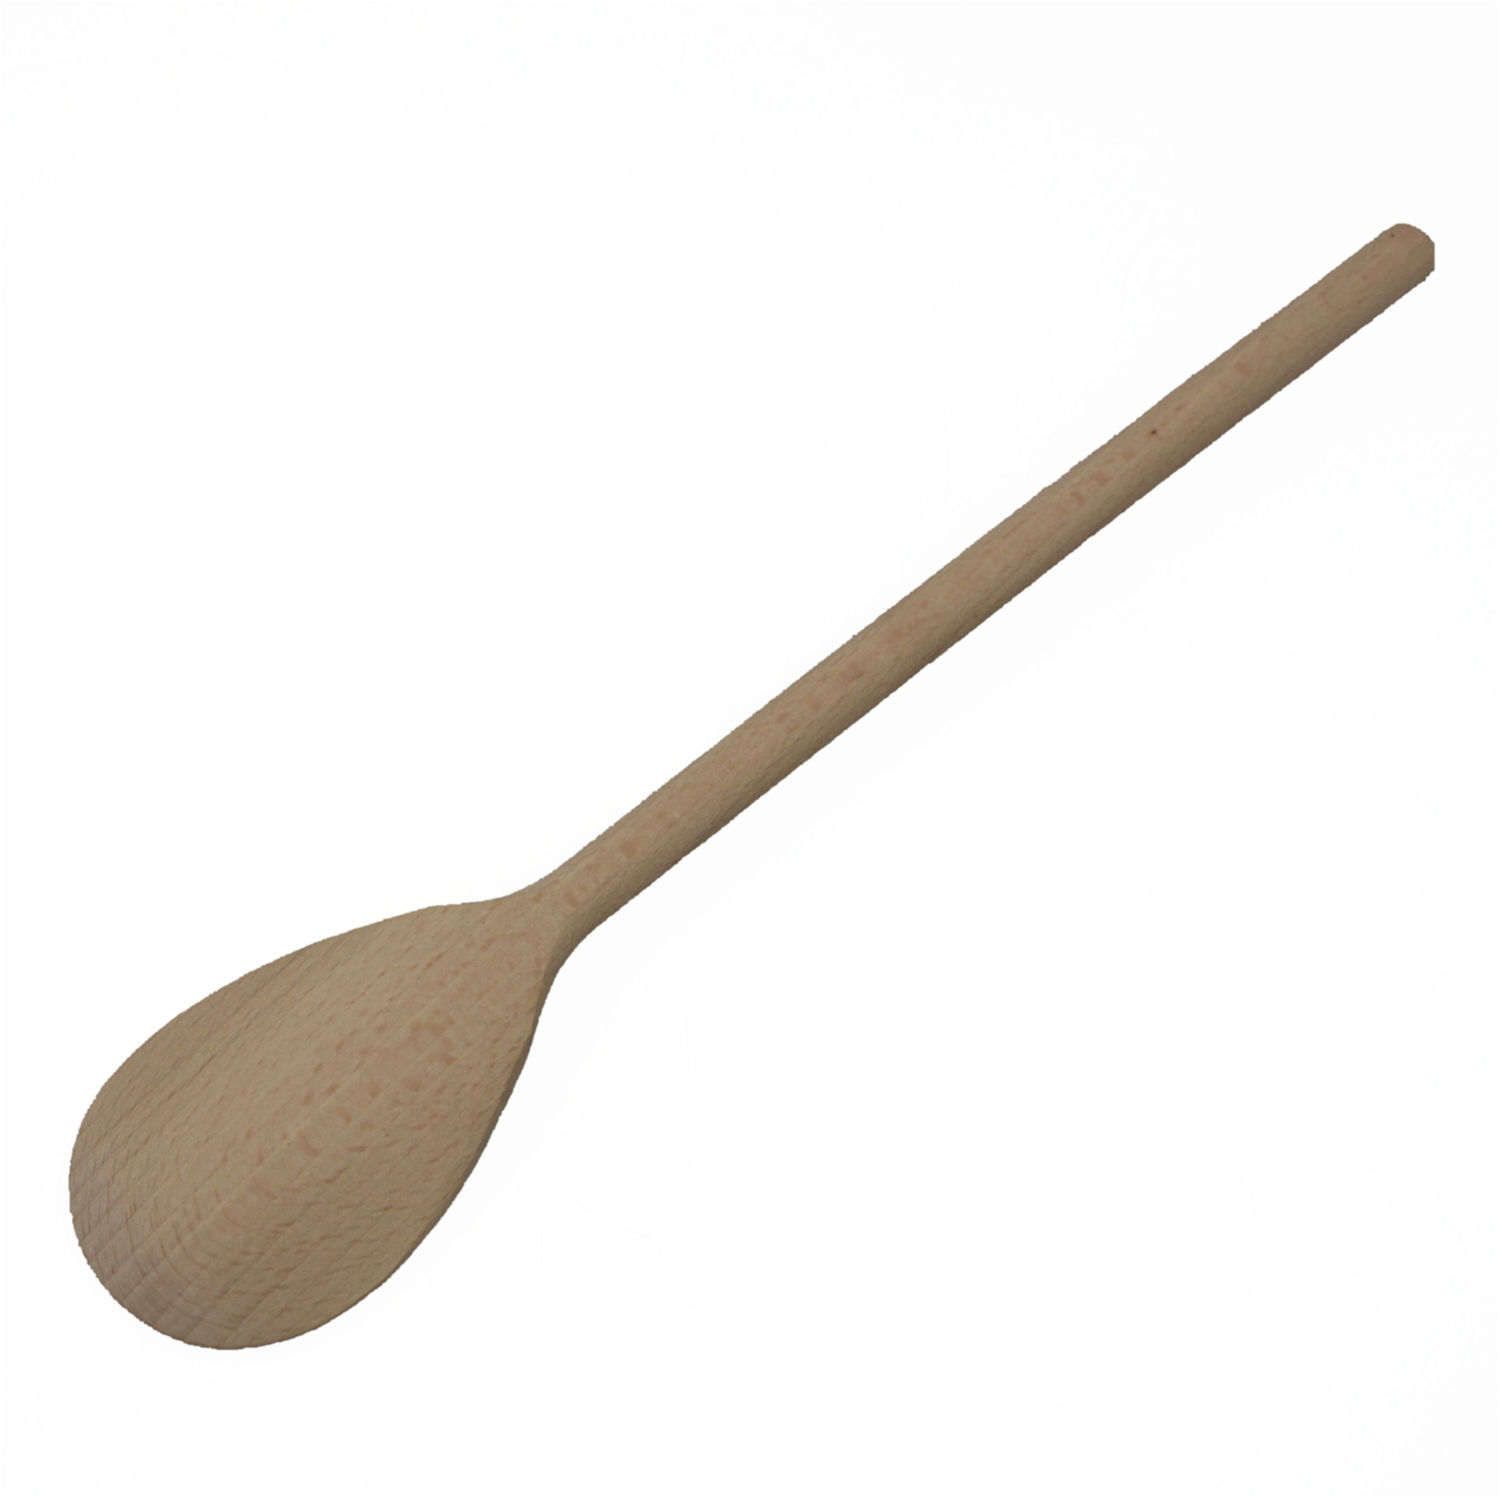 cucchiaio da cucina sostenibile in legno di faggio naturale